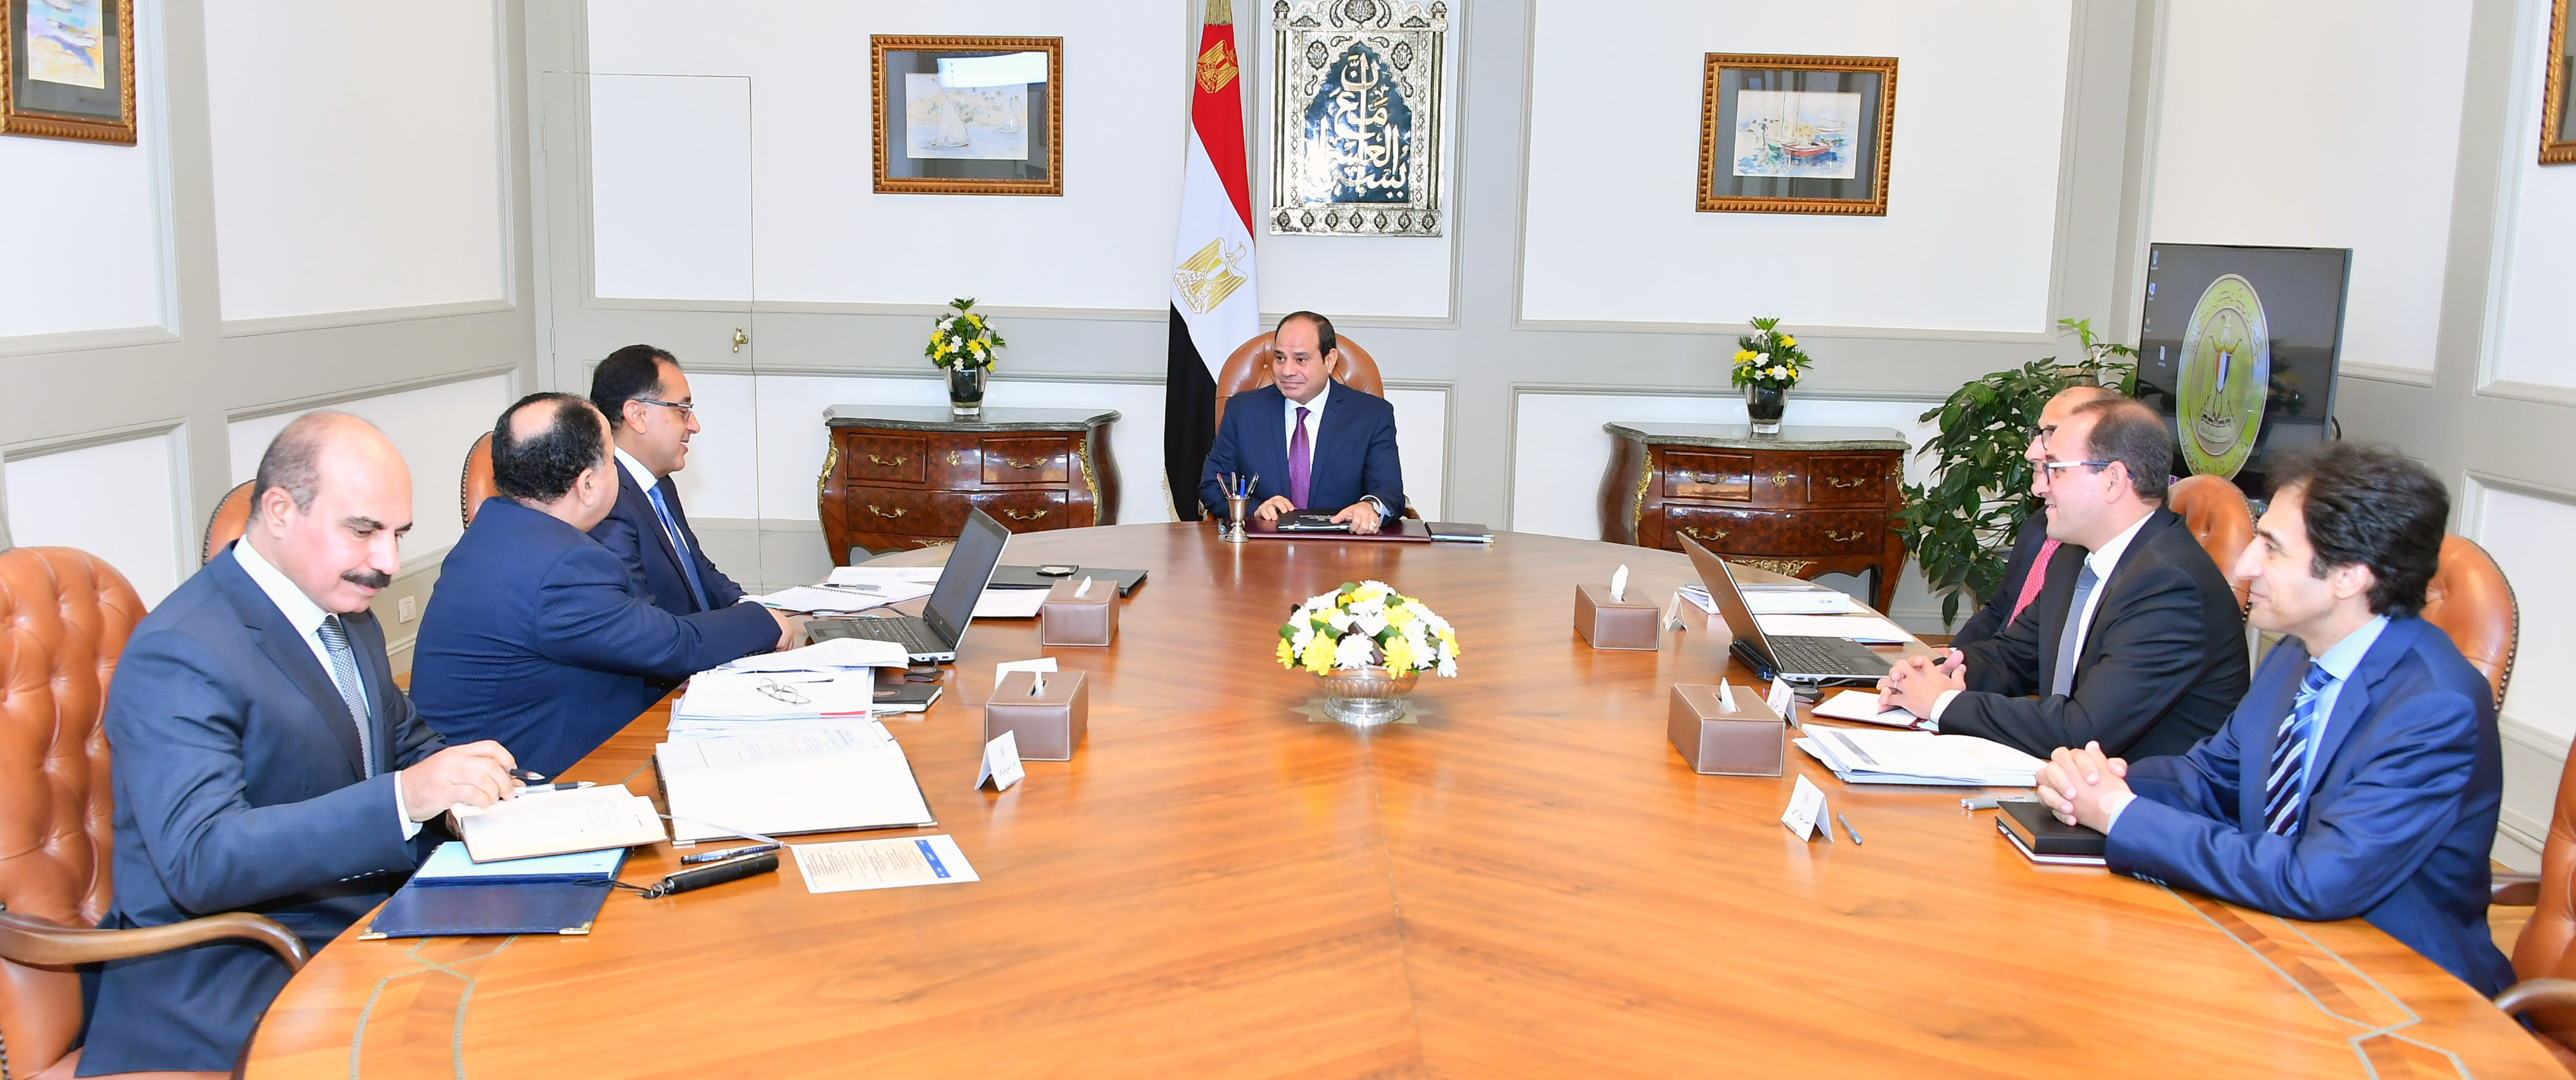 صور اجتماع السيسى مع وزير المالية (2)